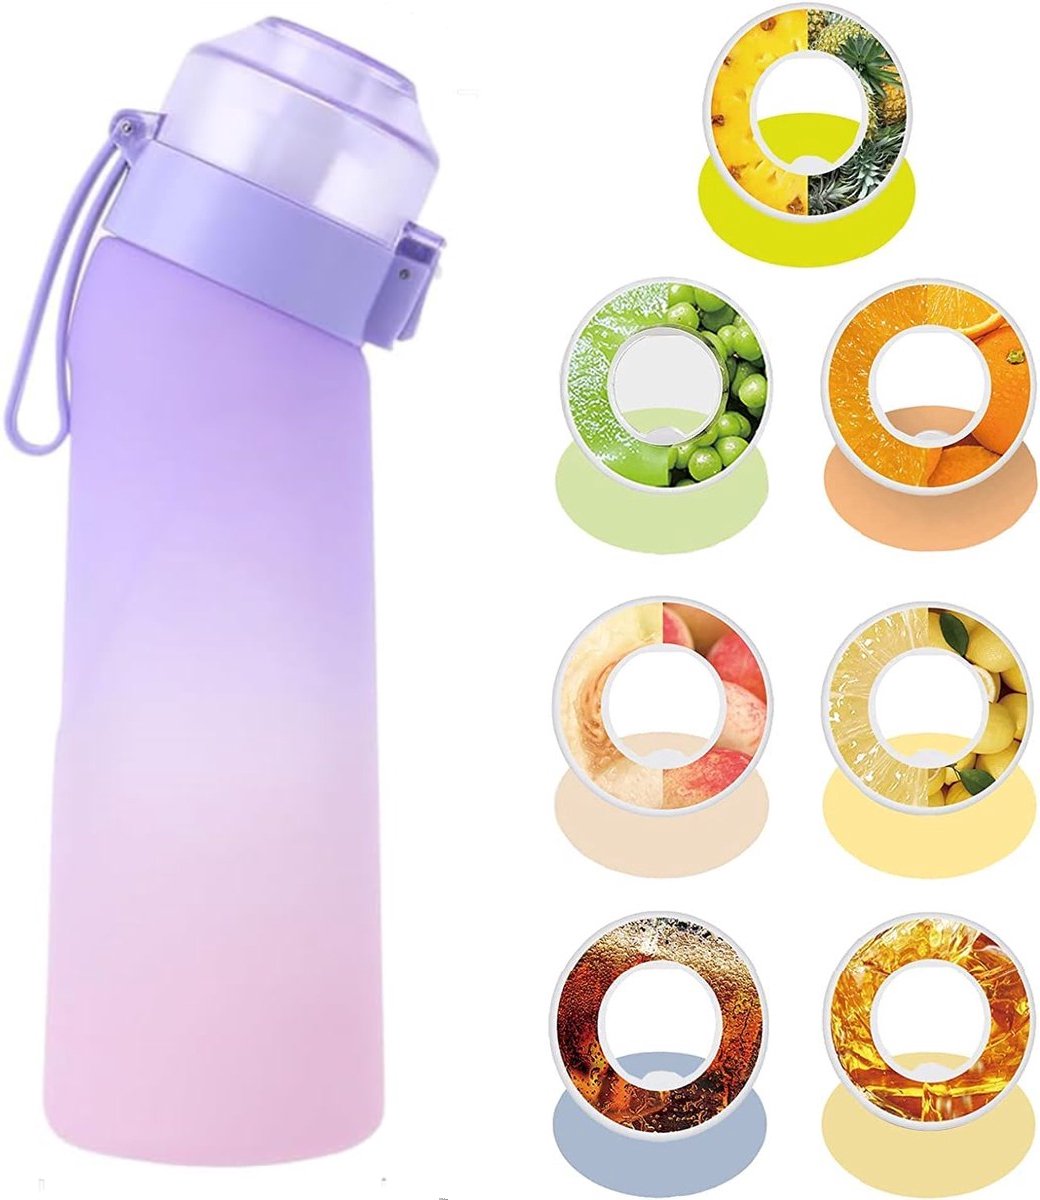 Geurwater Drinkfles - Water Bottle Up - Geur Air Waterfles - Inclusief 7 Pods - Paars / Roze - 650 ml - Tritan - BPA-vrij - Starterskit - Ananas - Citroen - Cola - Groene Druiven - Perzik - Red Bull - Sinaasappel